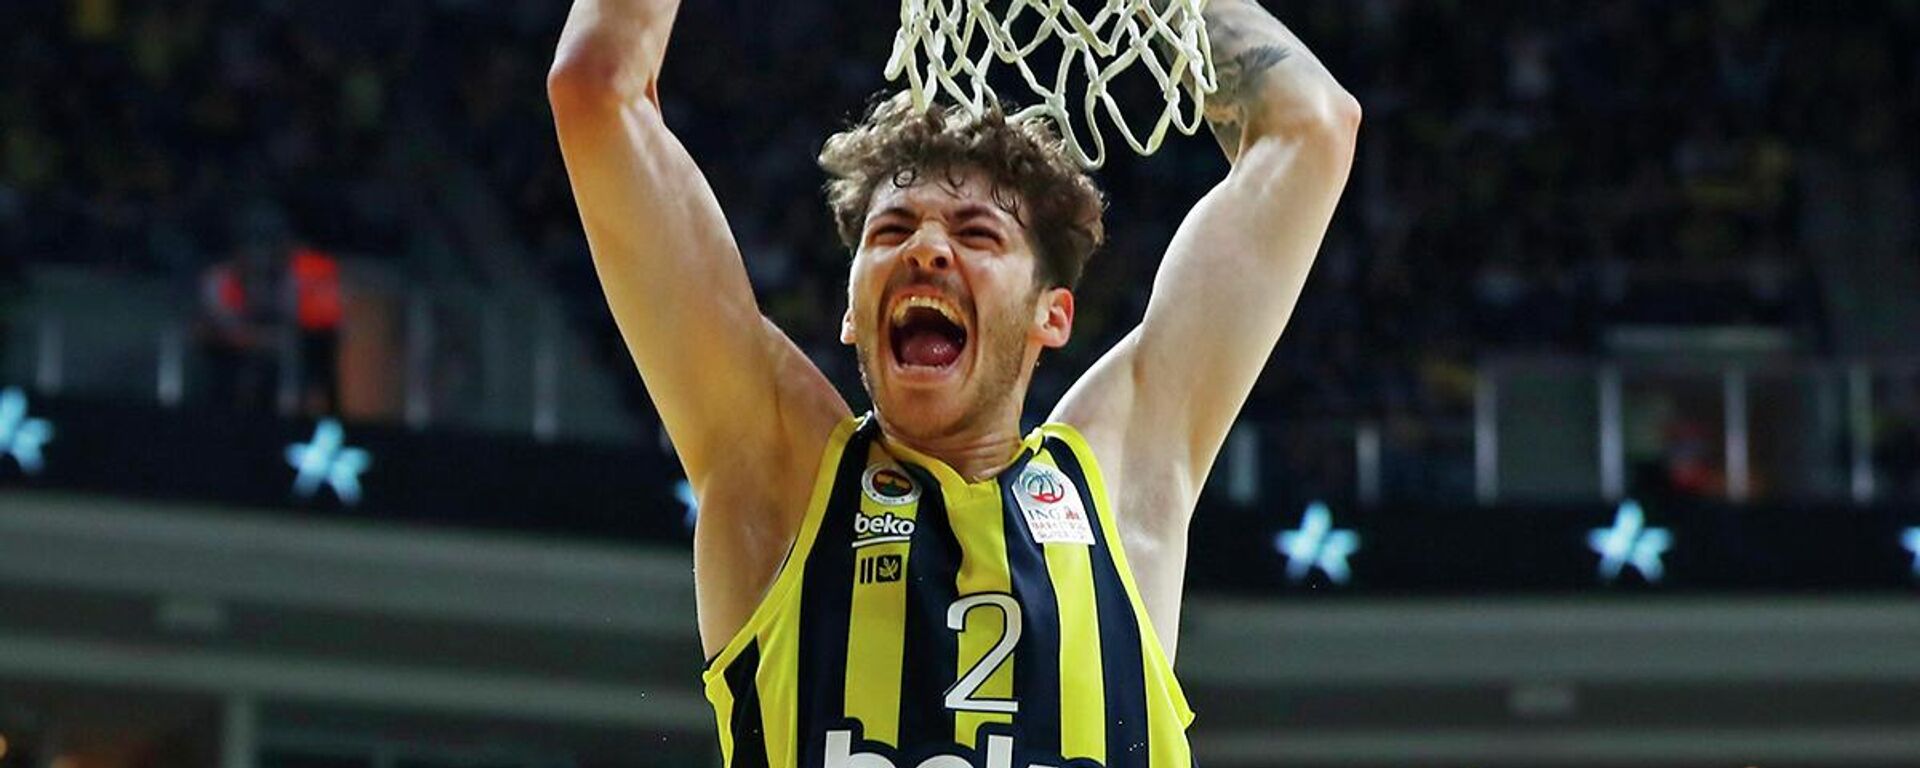 ING Basketbol Süper Ligi play-off final serisinde A. Efes’i 92-80 mağlup eden Fenerbahçe Beko, seride durumu 3-1 yaparak 2021-2022 sezonunu şampiyon tamamladı. - Sputnik Türkiye, 1920, 13.06.2022